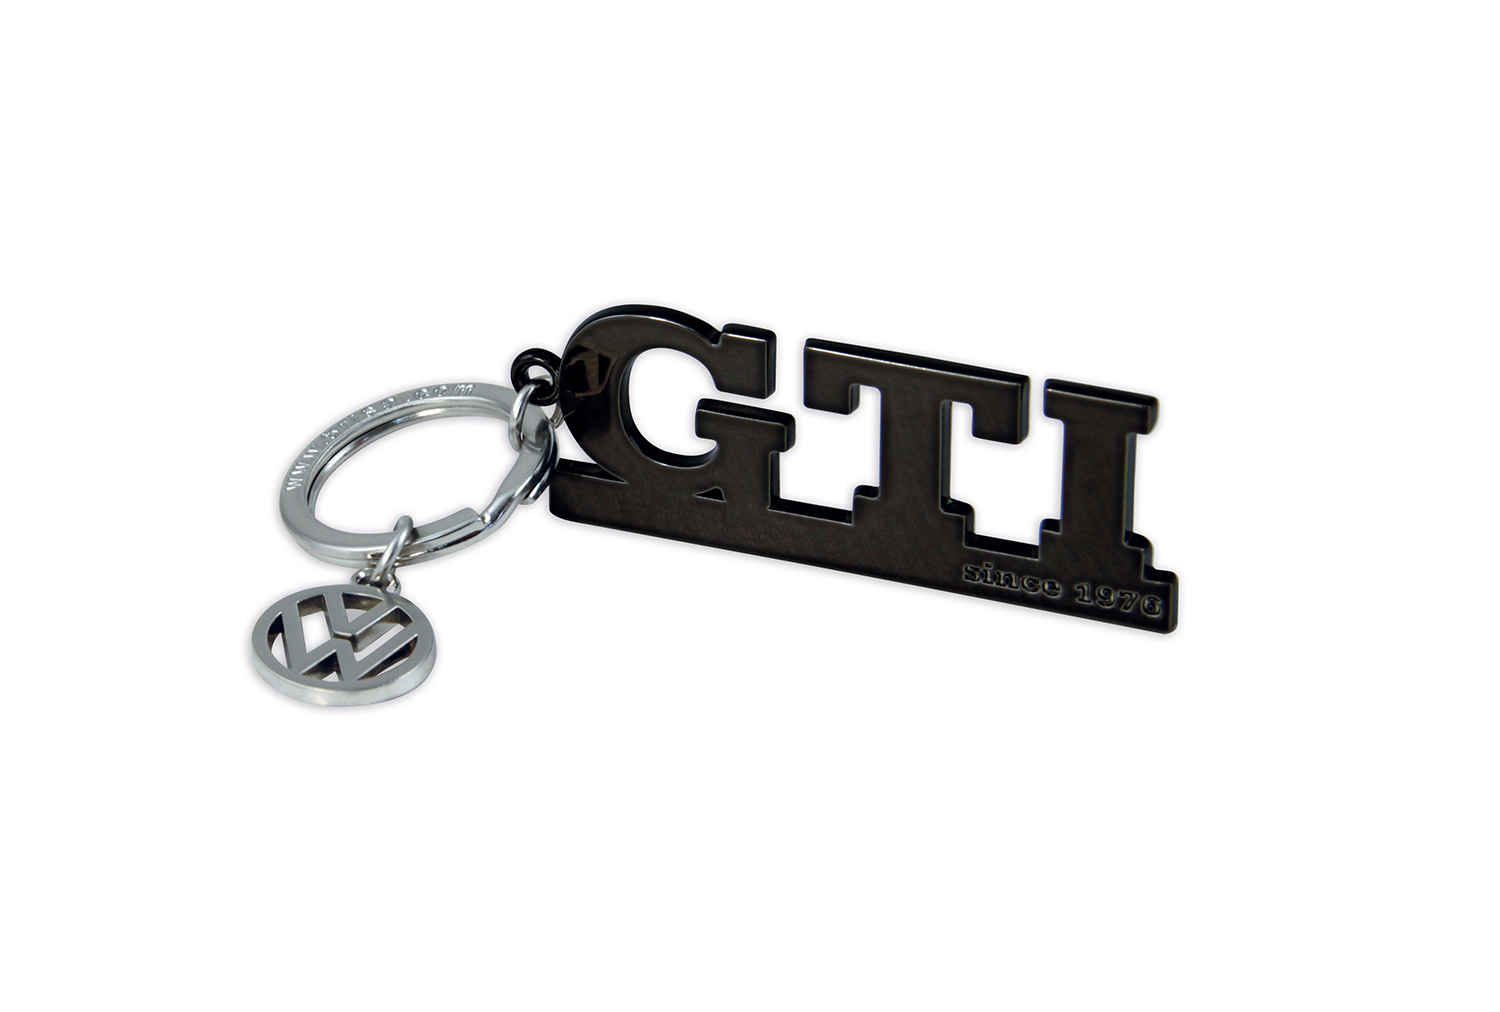 VW GTI Schlüsselanhänger mit Charm